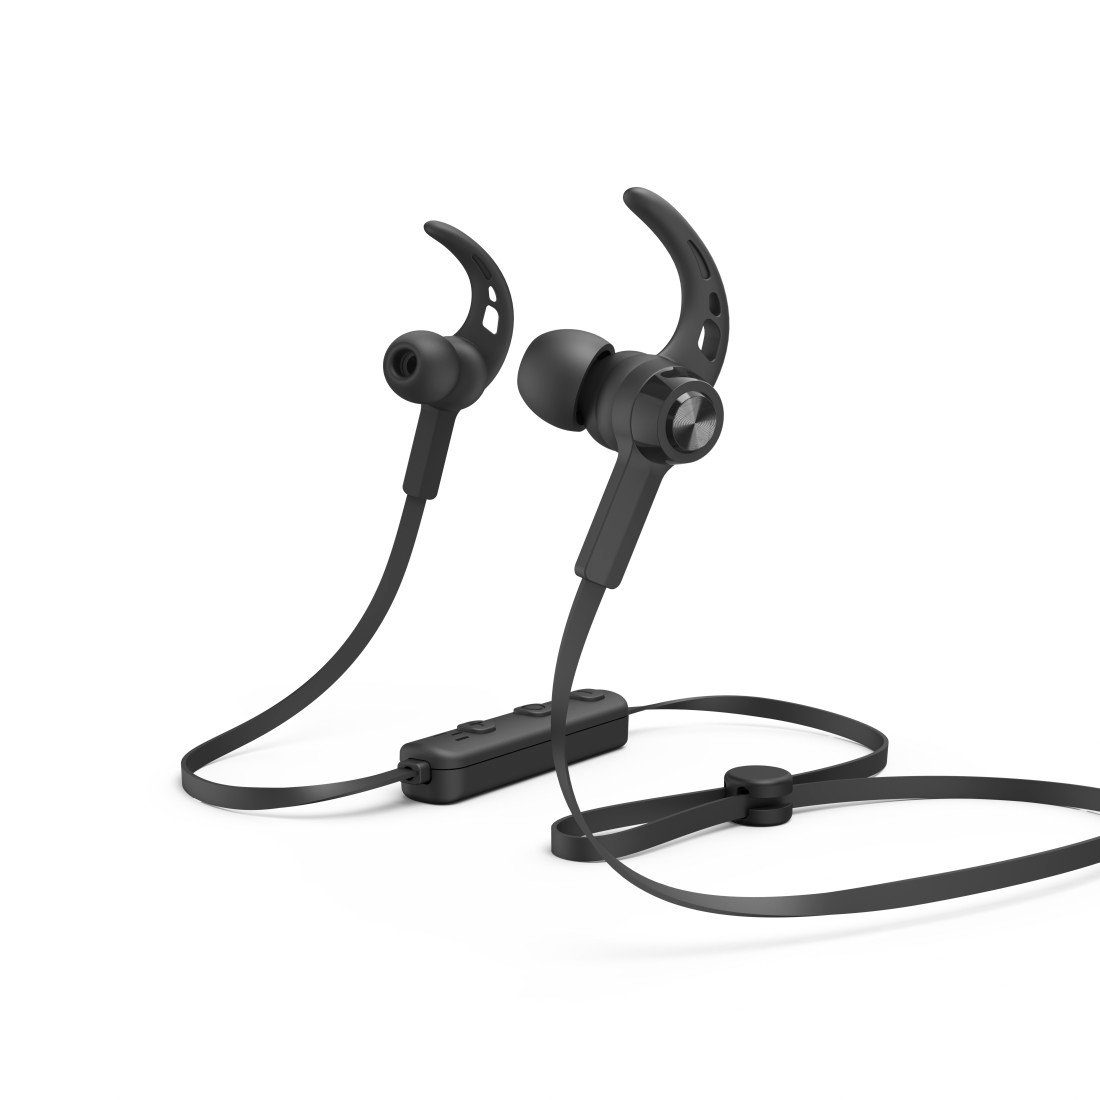 Hama Sport Ear, Google Sprachassistenten, Reichweite A2DP Bluetooth, Lautstärkeregler Siri, Schwarz, In Sprachsteuerung, Assistant, Mikrofon, 10m HFP, AVRCP (Freisprechfunktion, Bluetooth, und Bluetooth®-Kopfhörer Bluetooth-Kopfhörer 5.0 Rufannahmetaste)